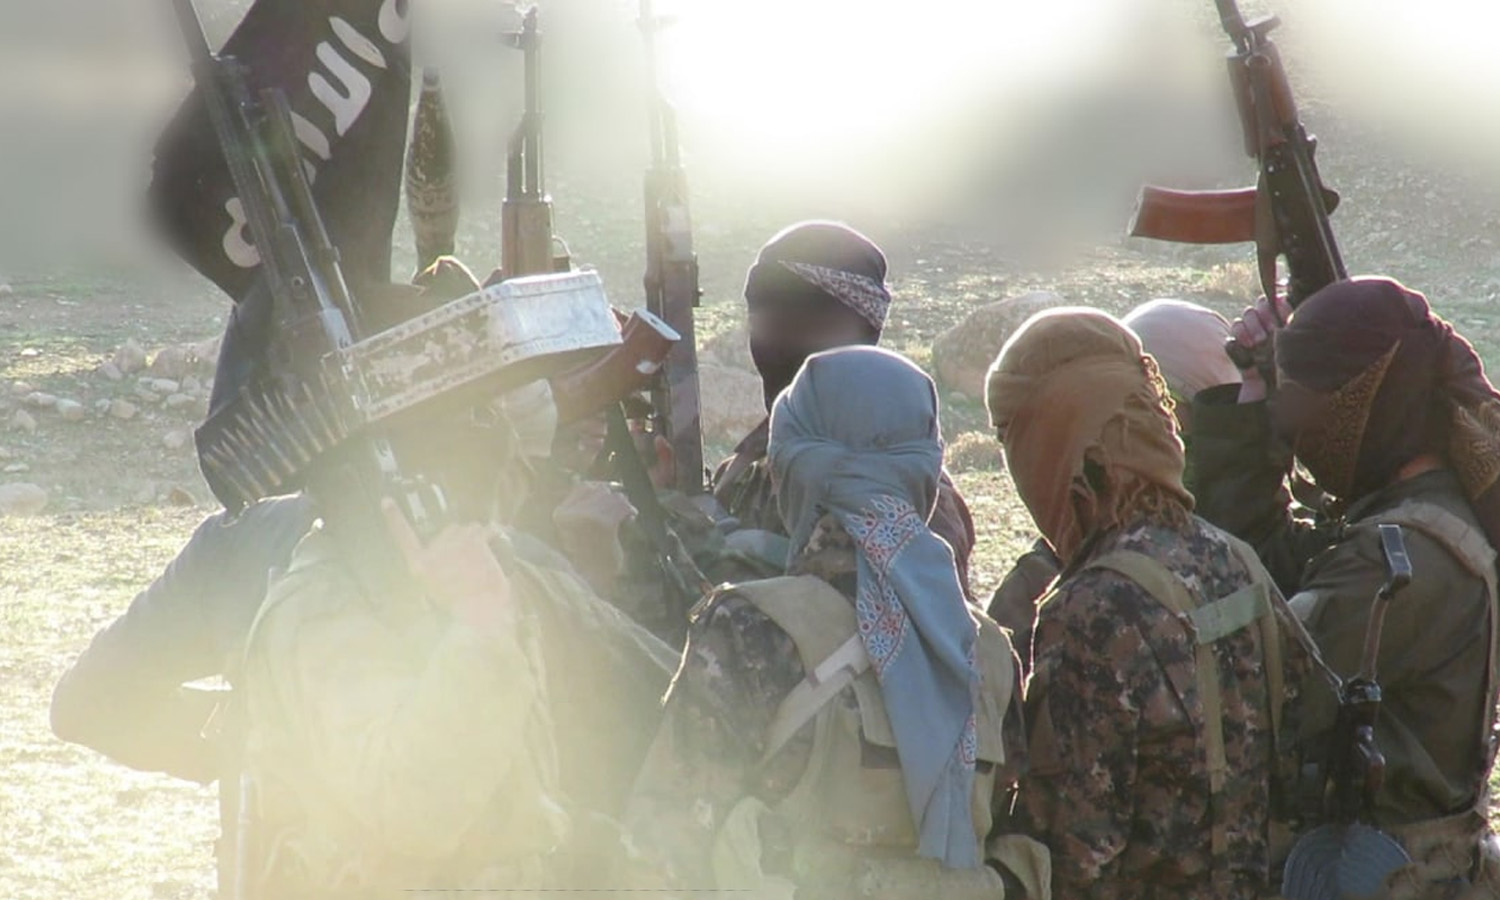 مقاتلون من تنظيم "الدولة الإسلامية" في سوريا (أعماق)